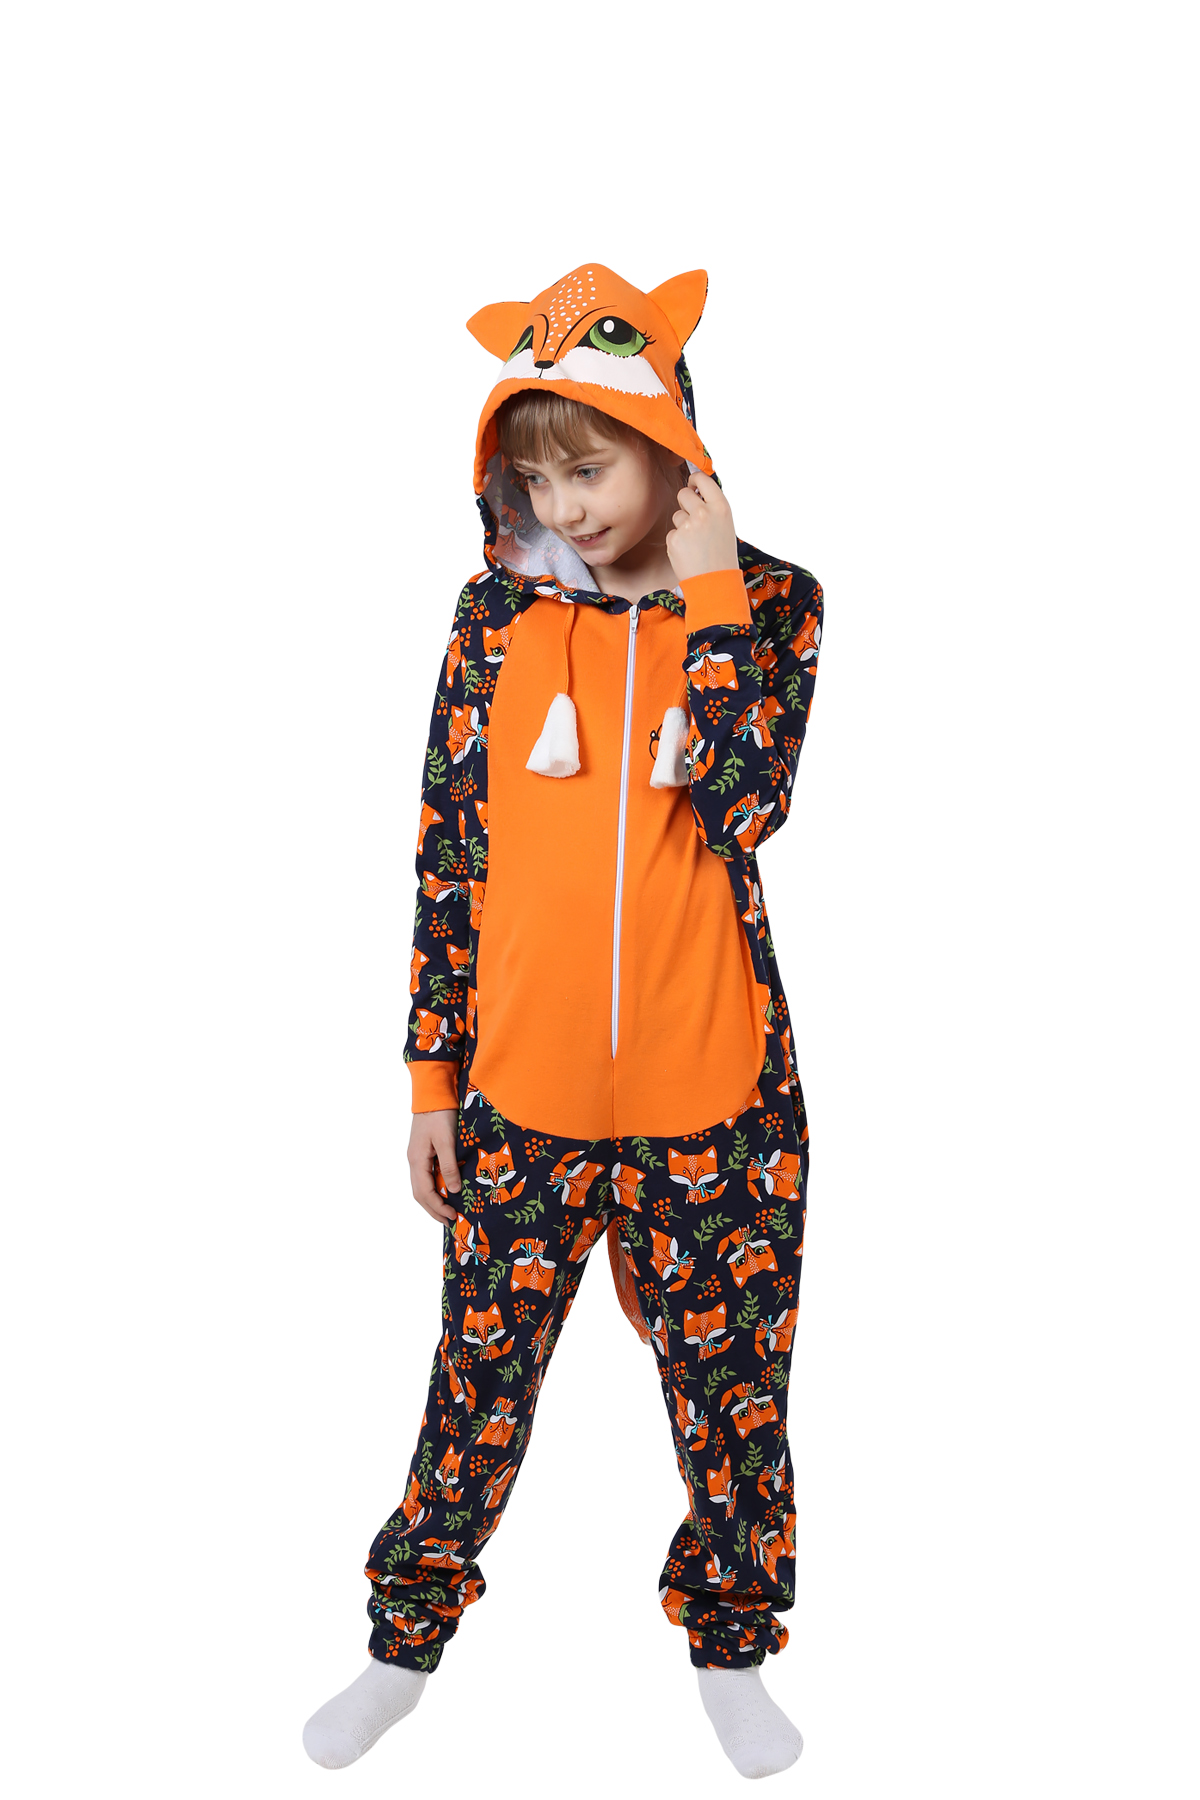 Детская пижама-кигуруми Лиса Цвет: Оранжевый (4-5 лет), размер 4-5 лет otj636466 Детская пижама-кигуруми Лиса Цвет: Оранжевый (4-5 лет) - фото 1